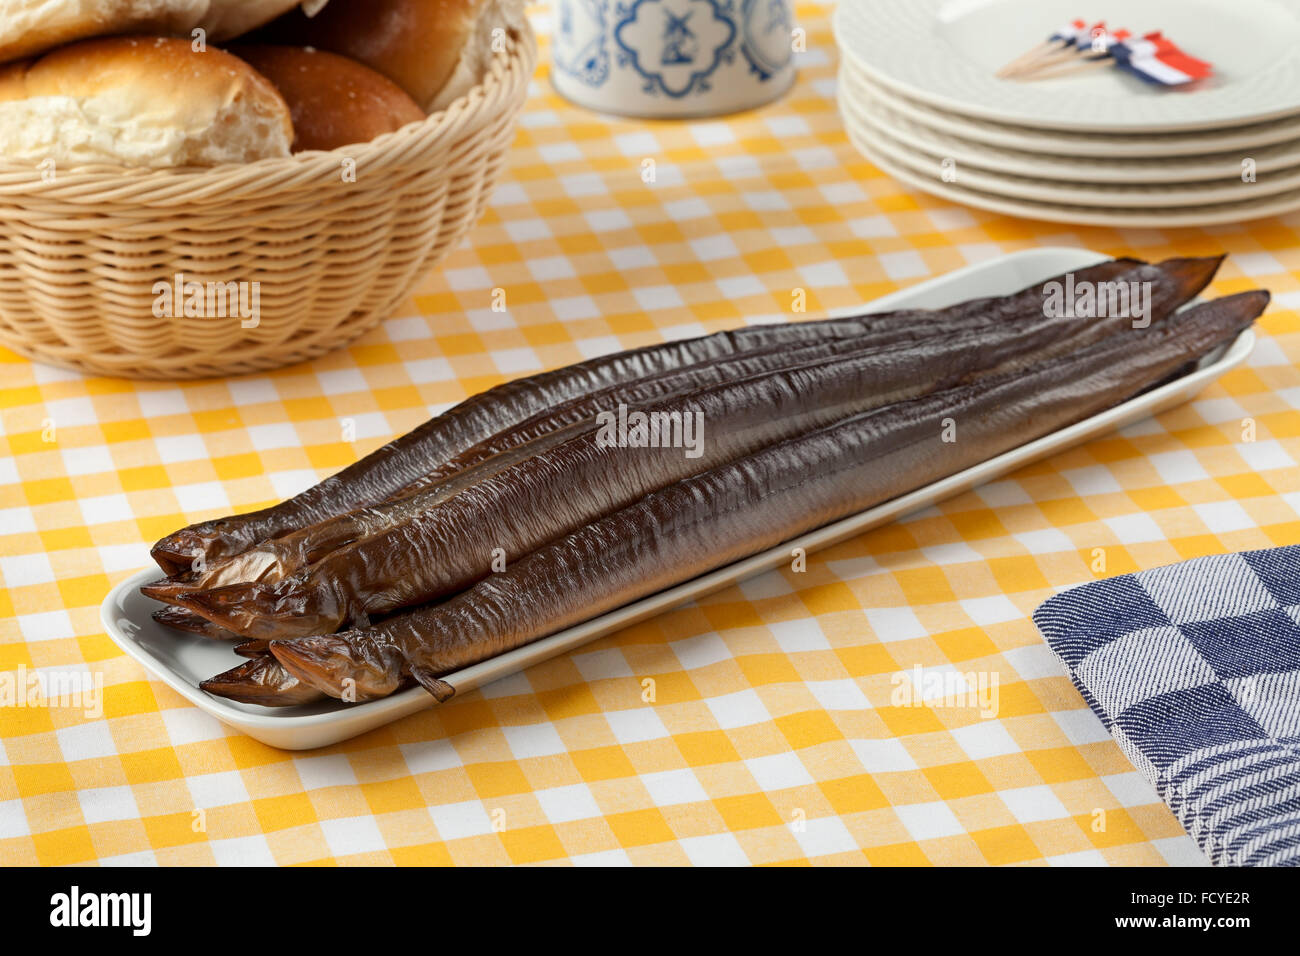 Plato con ahumados, anguilas y rollos de blanco para el almuerzo Foto de stock